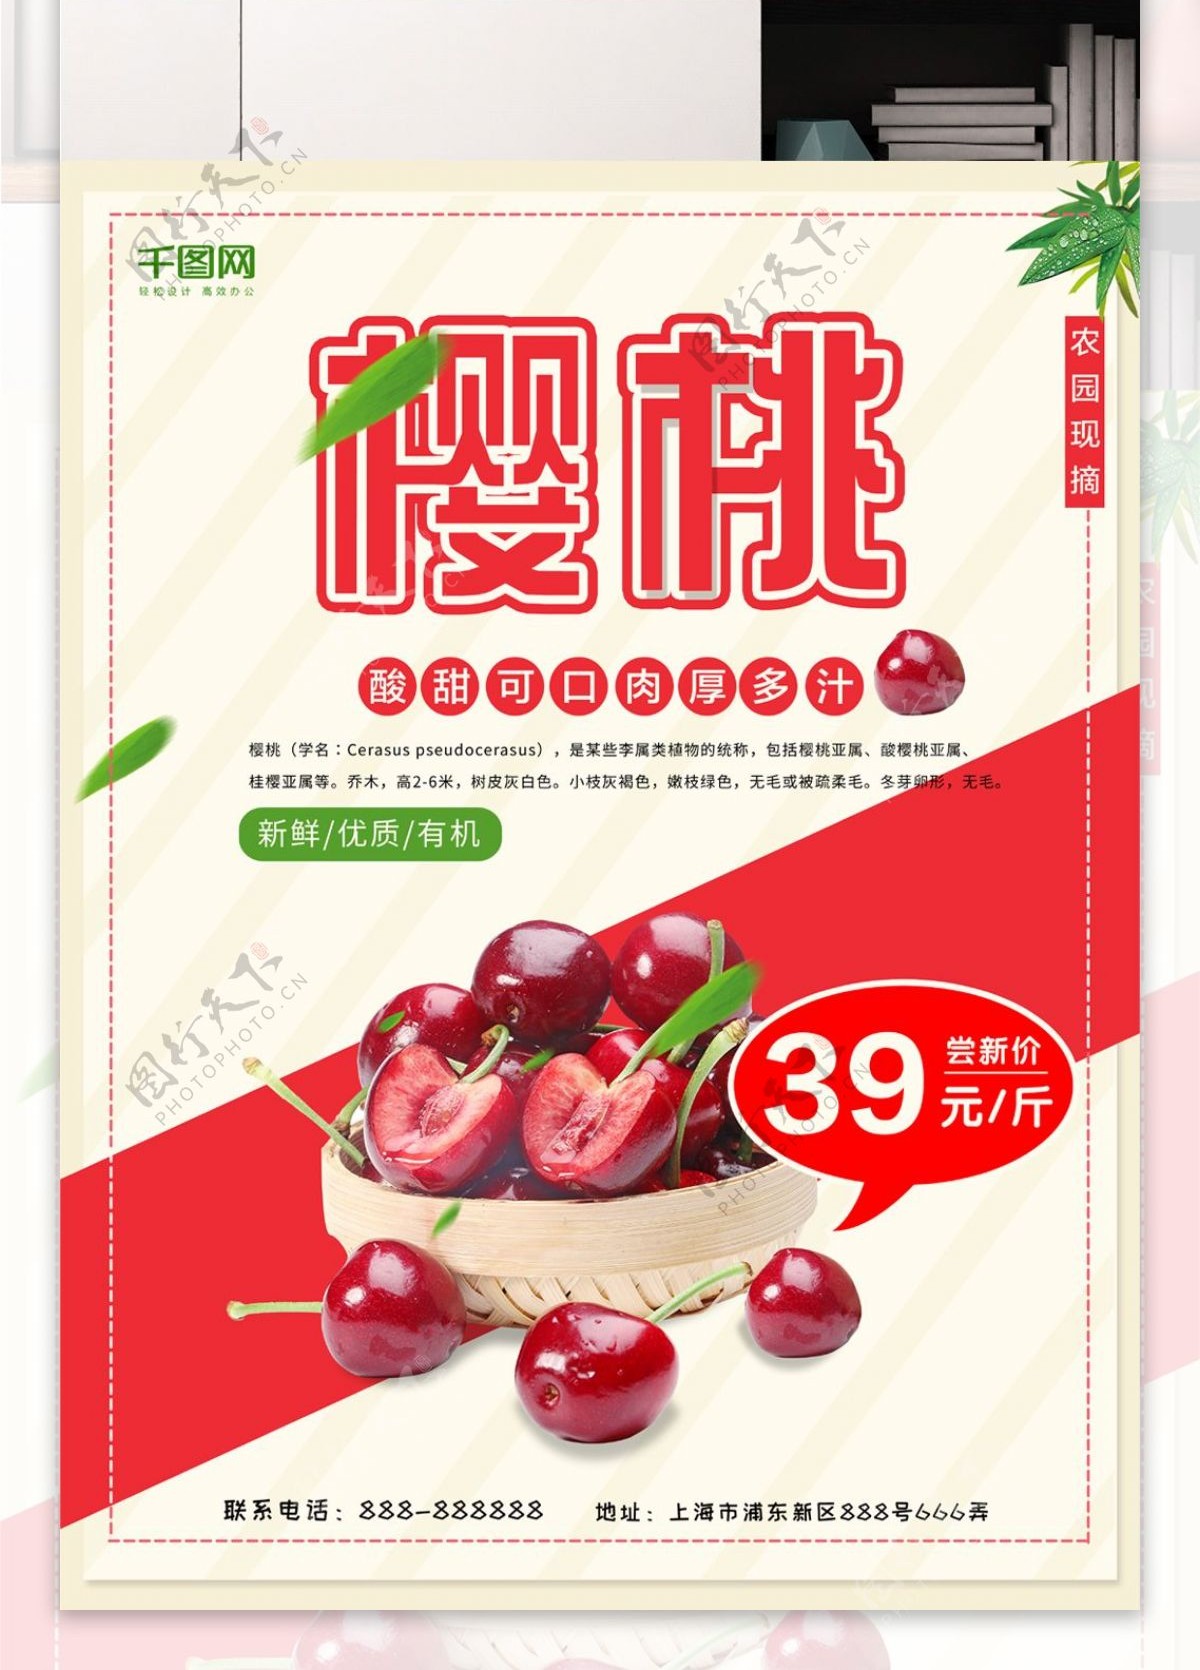 2018樱桃水果商场促销海报